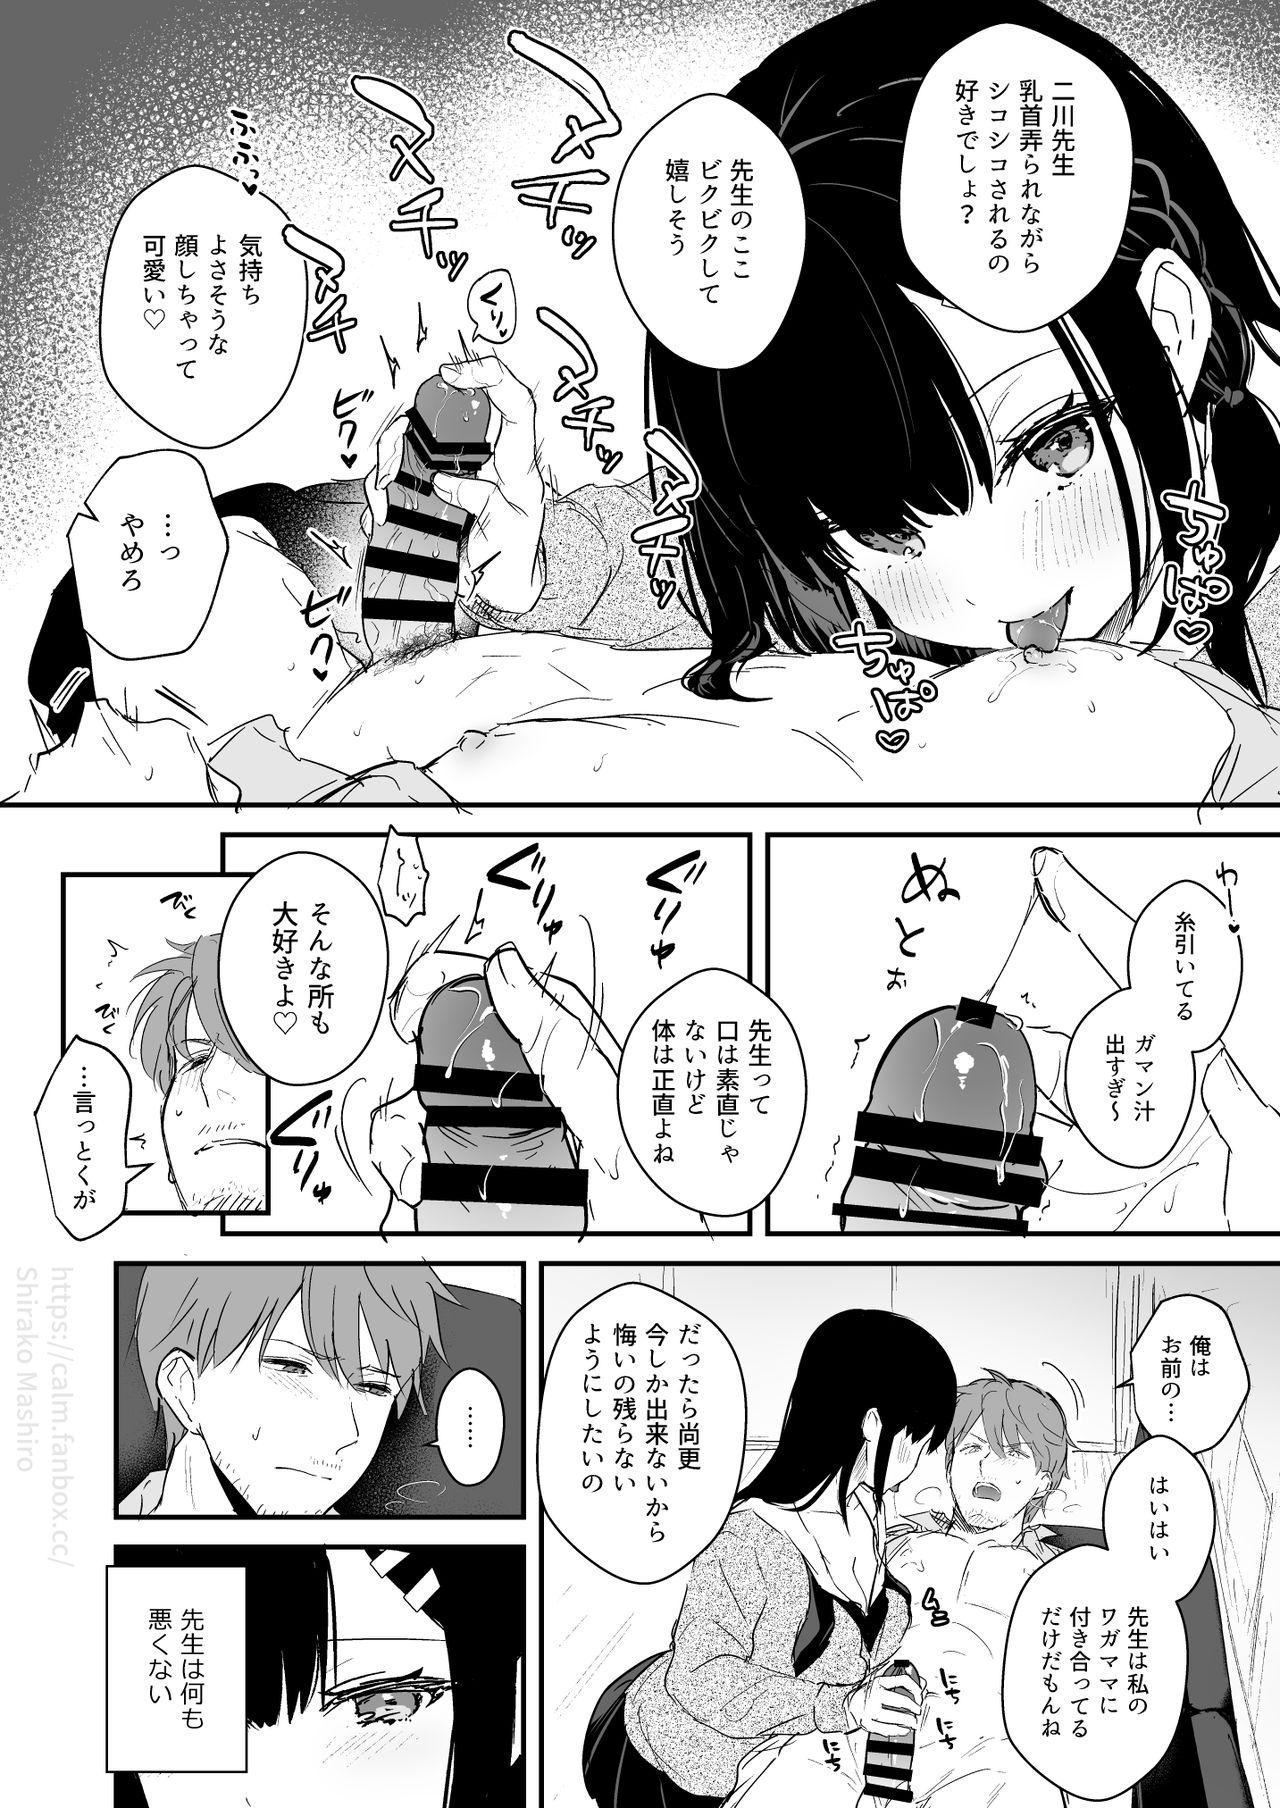 JK Miyako no Valentine Manga 5